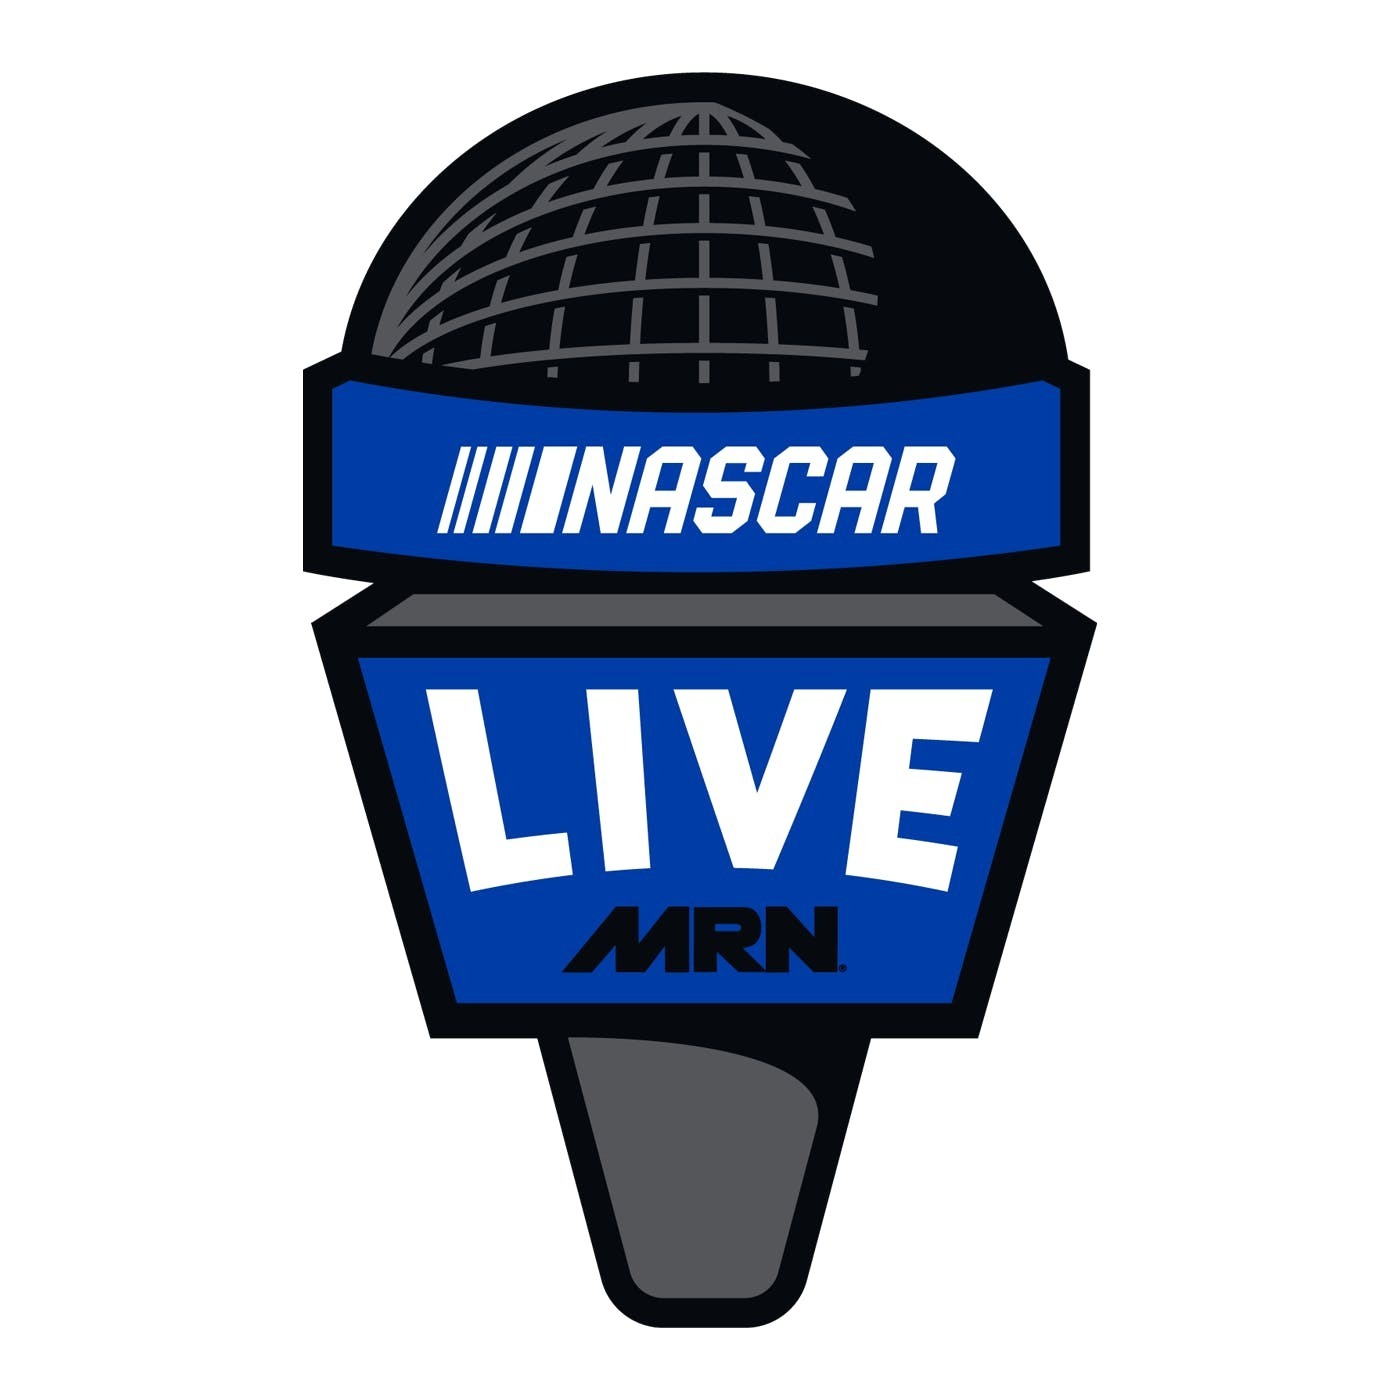 NASCAR LIVE WIDE OPEN Episode 118 : Jack Sprague